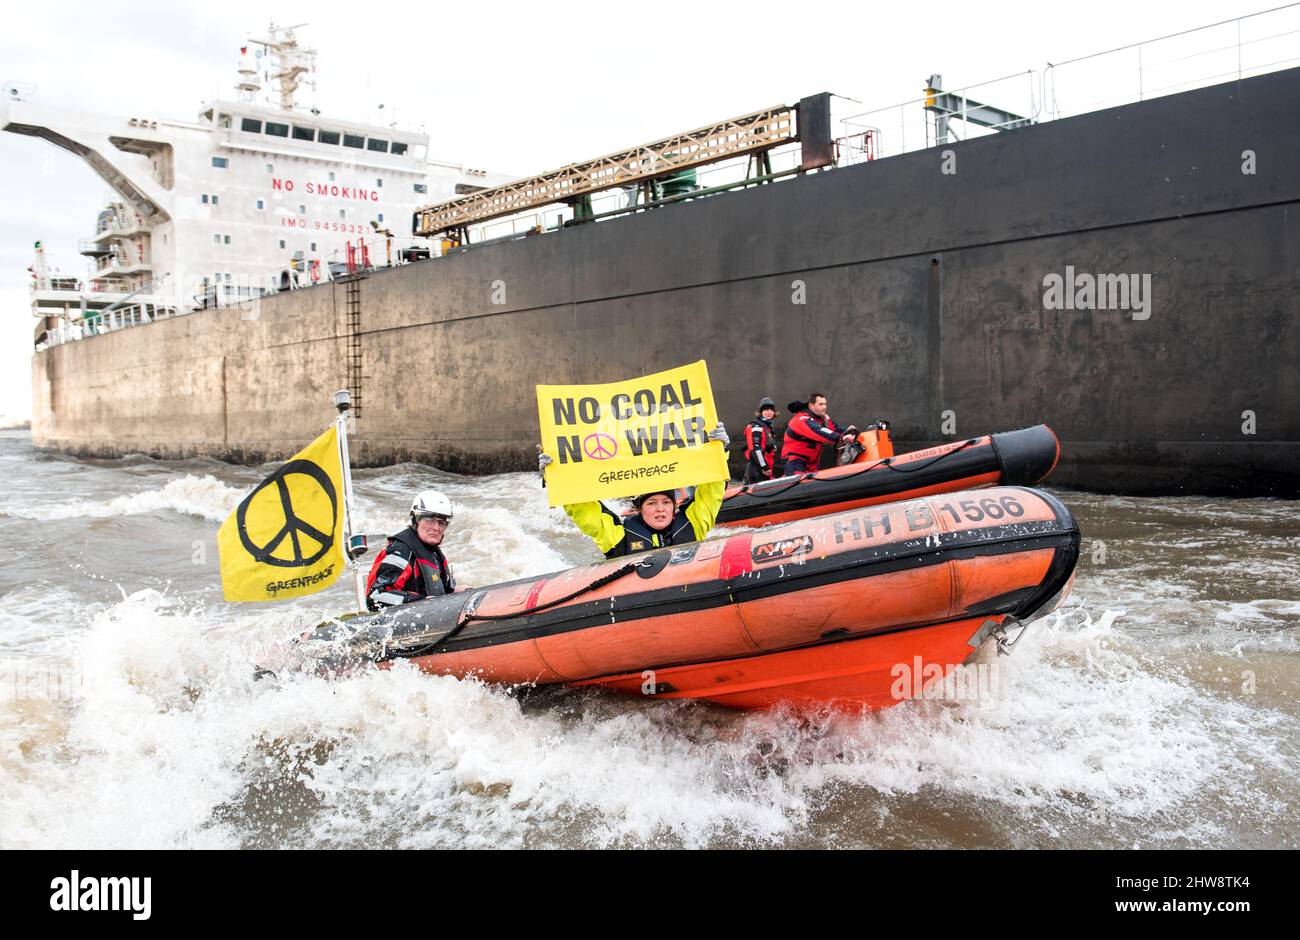 Greenpeace-Aktivisten in einem Schlauchboot Stockfotografie - Alamy